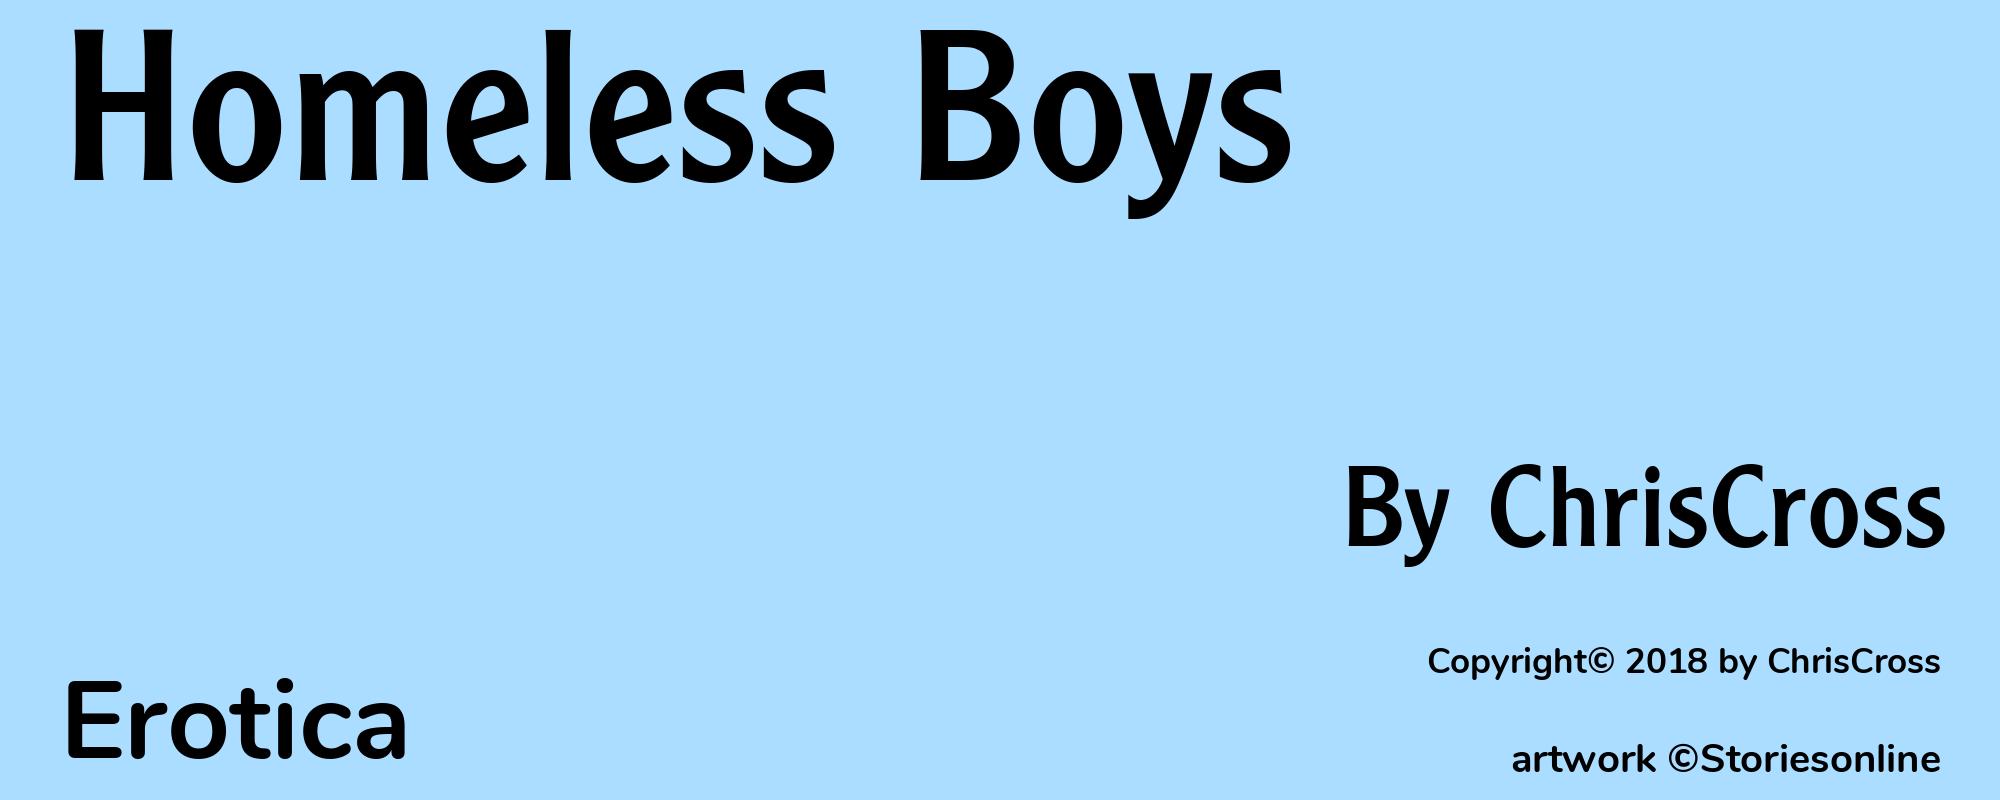 Homeless Boys - Cover